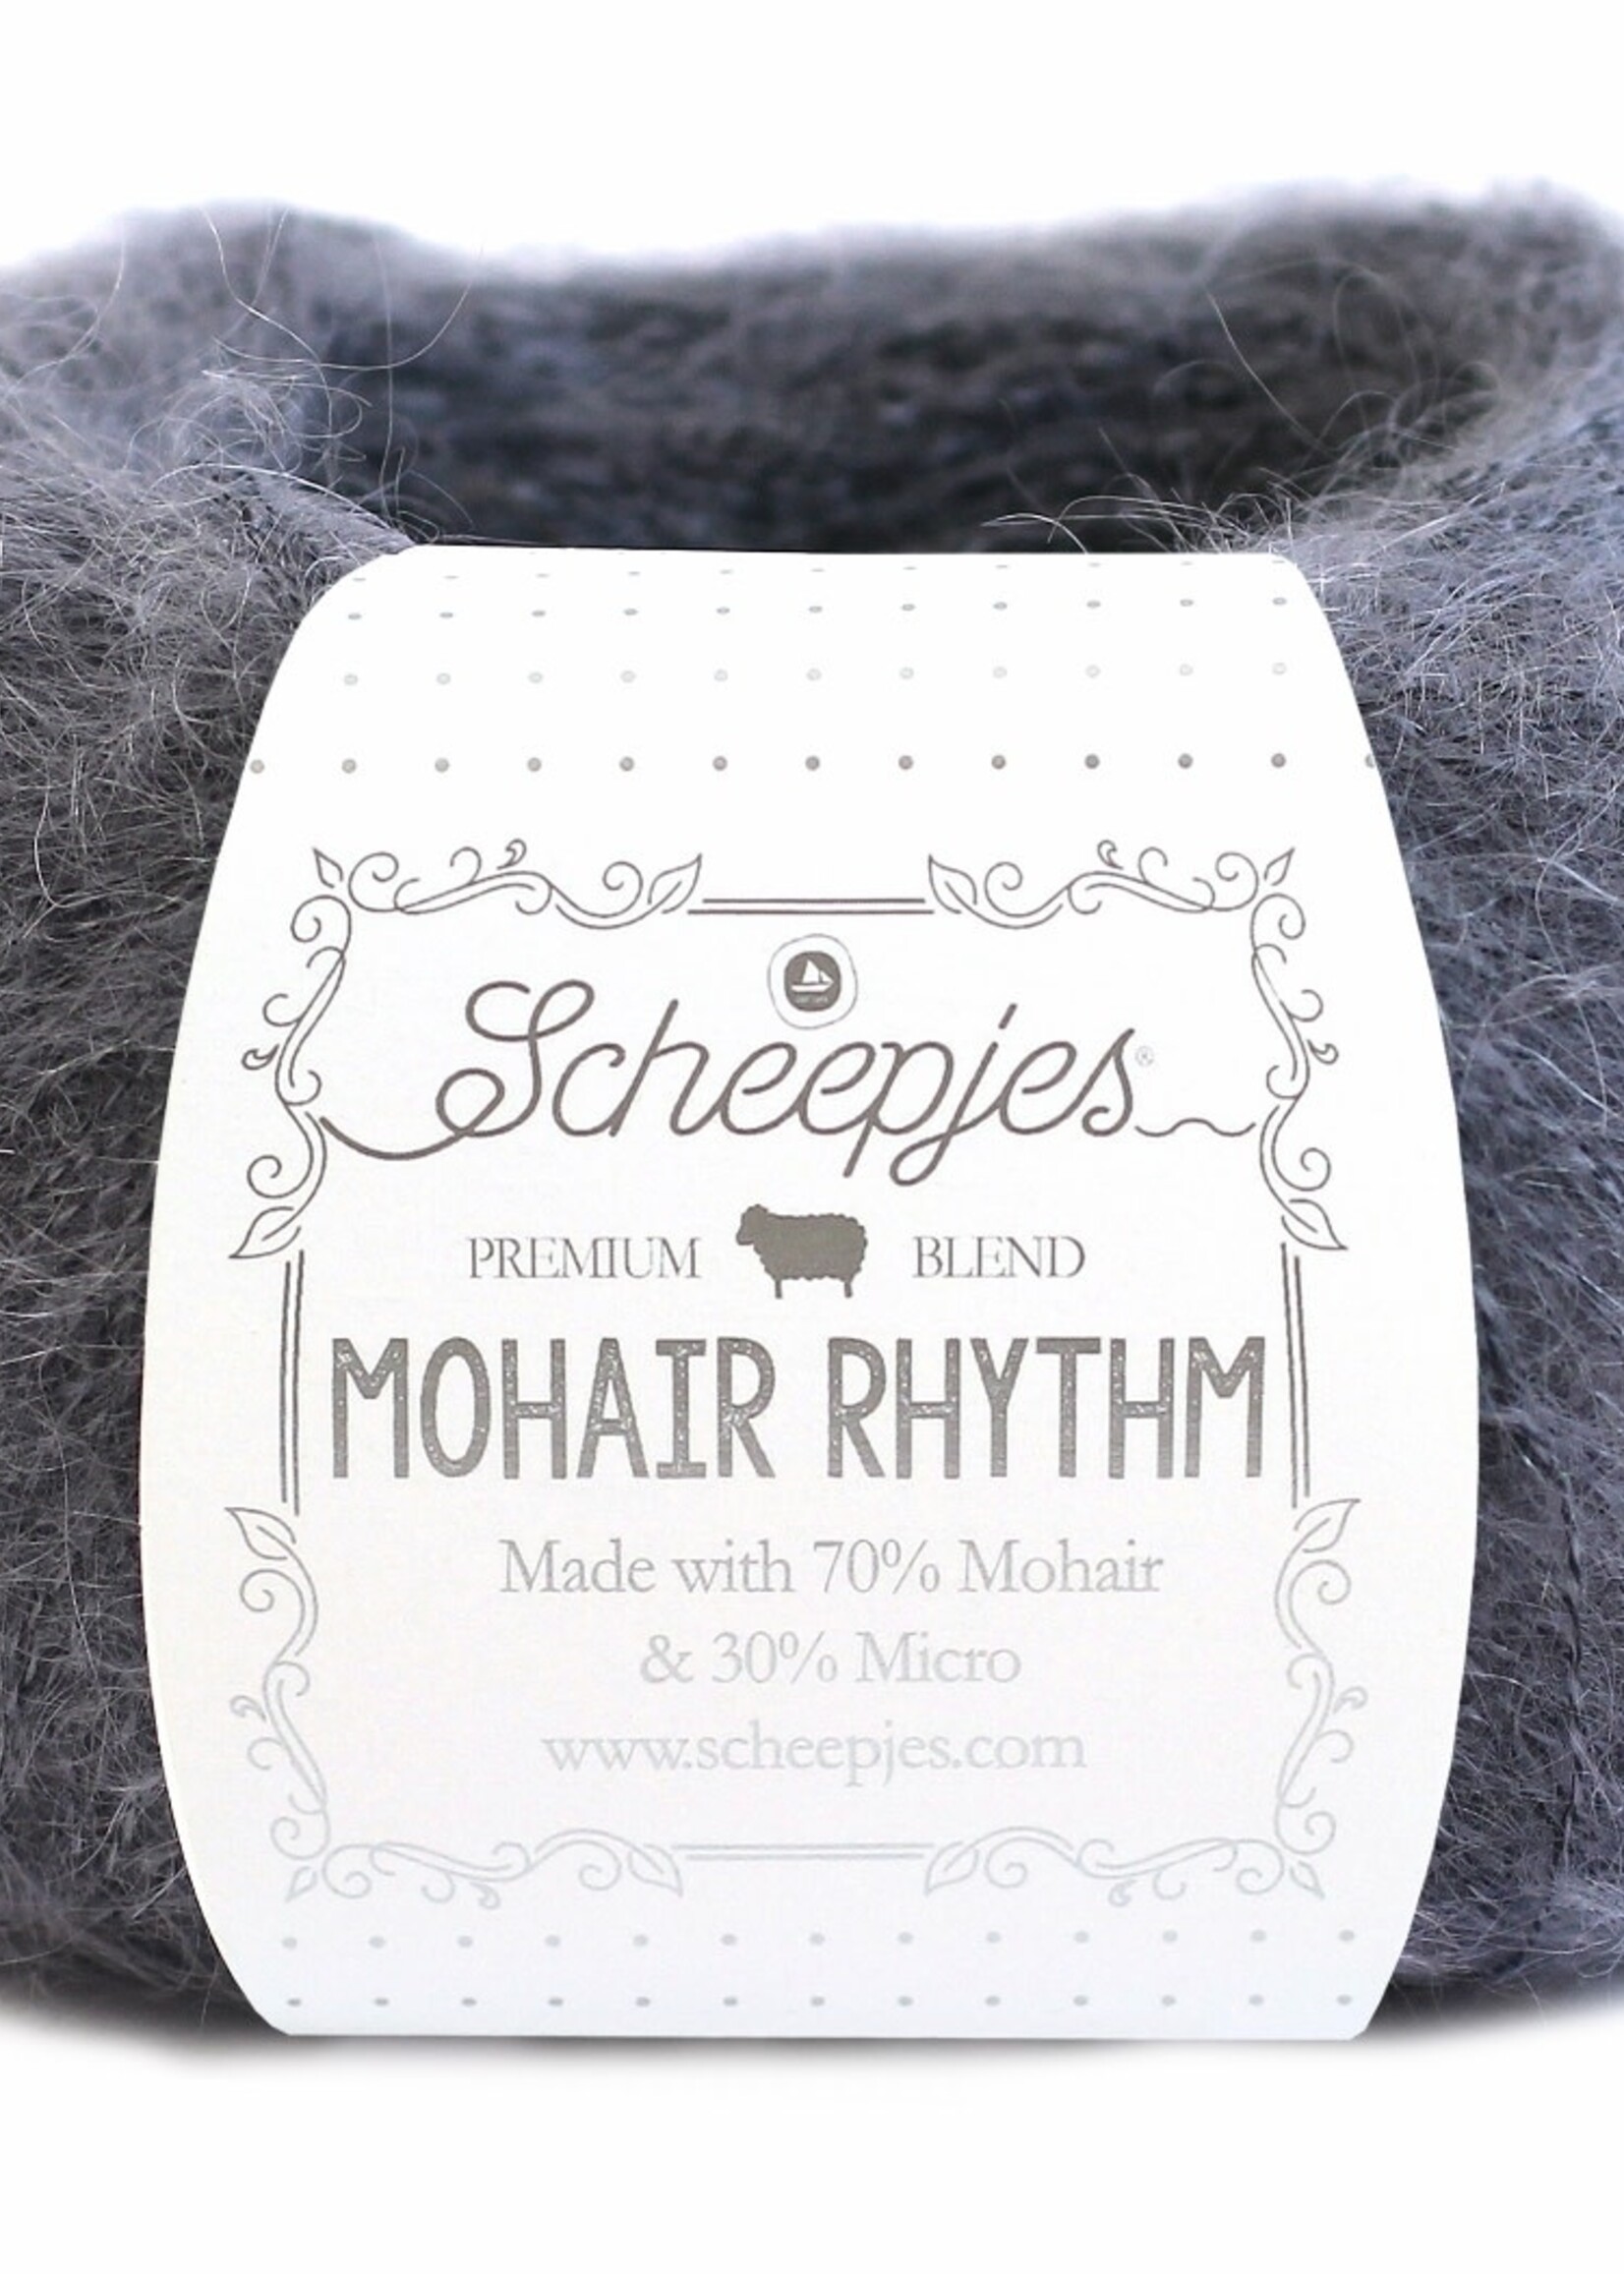 Scheepjes Mohair Rhythm - Scheepjes -685 Hip Hop